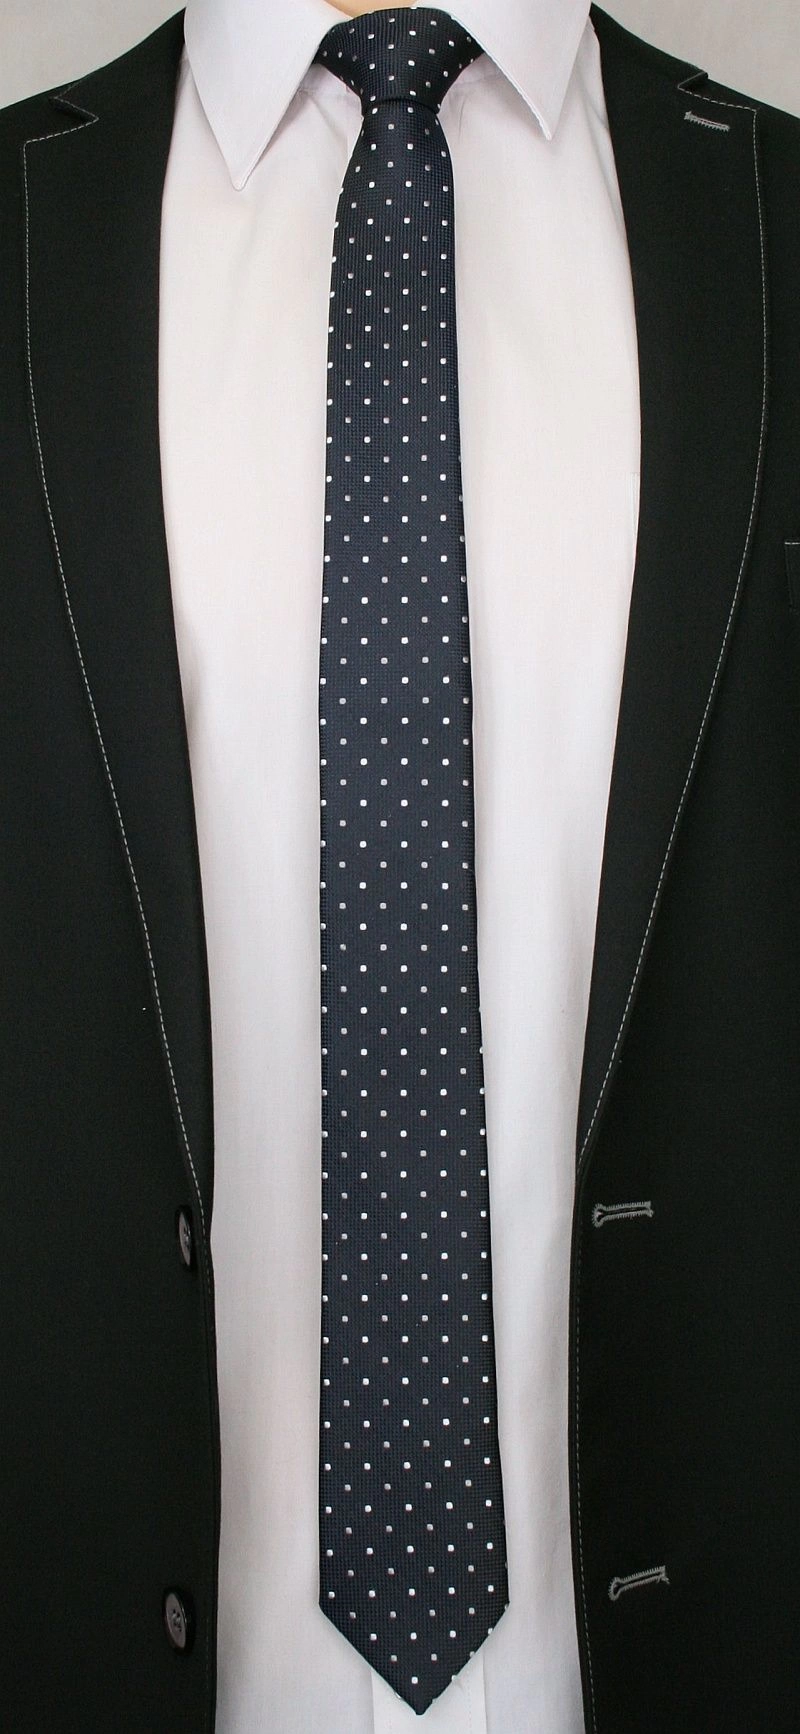 Ciemnogranatowy Elegancki Krawat Męski -ALTIES- 6 cm, w Biało-Szare Kropki, Groszki